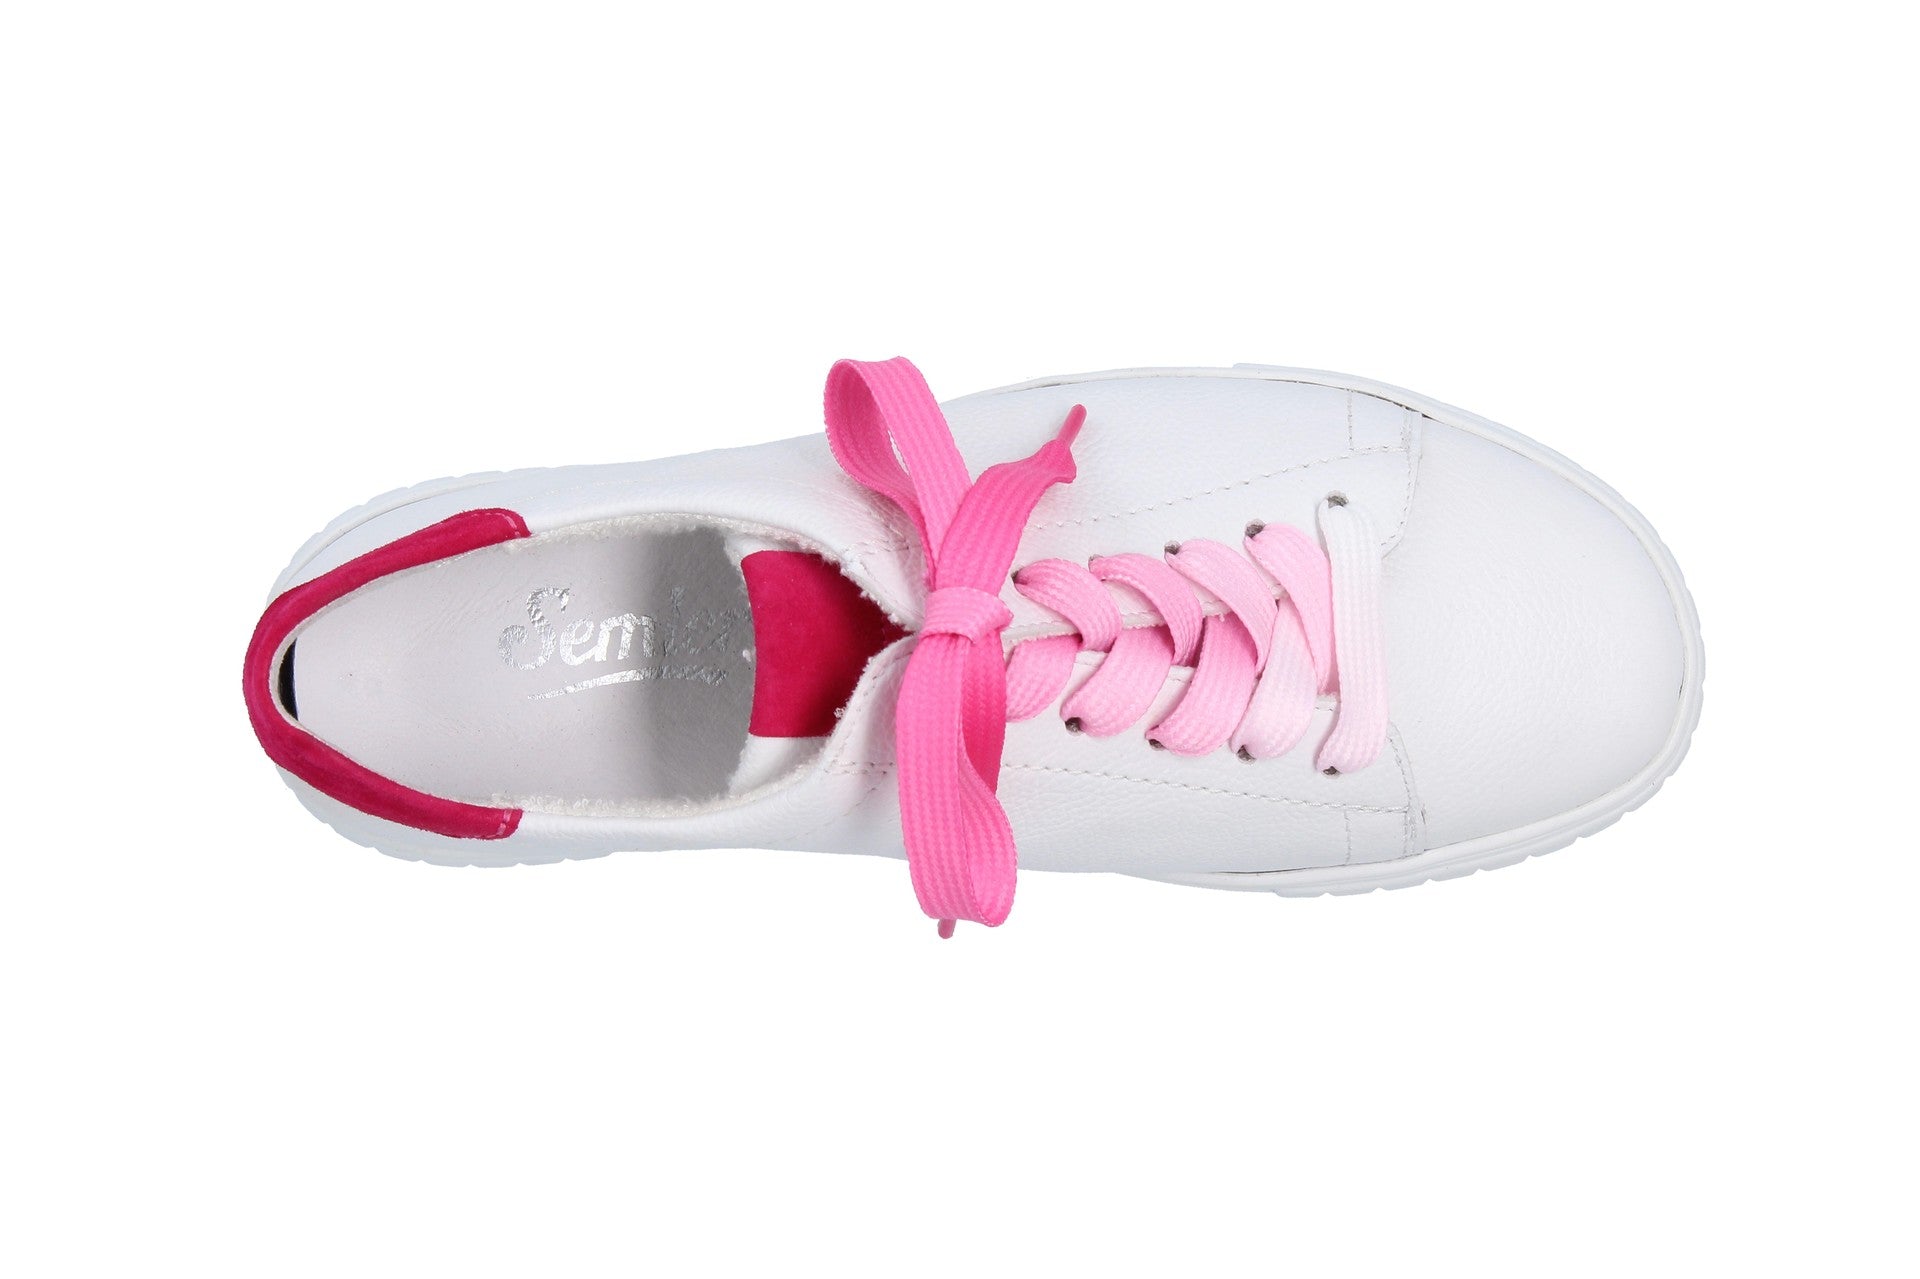 Pamela – weiss/pink – Sneaker – P4215